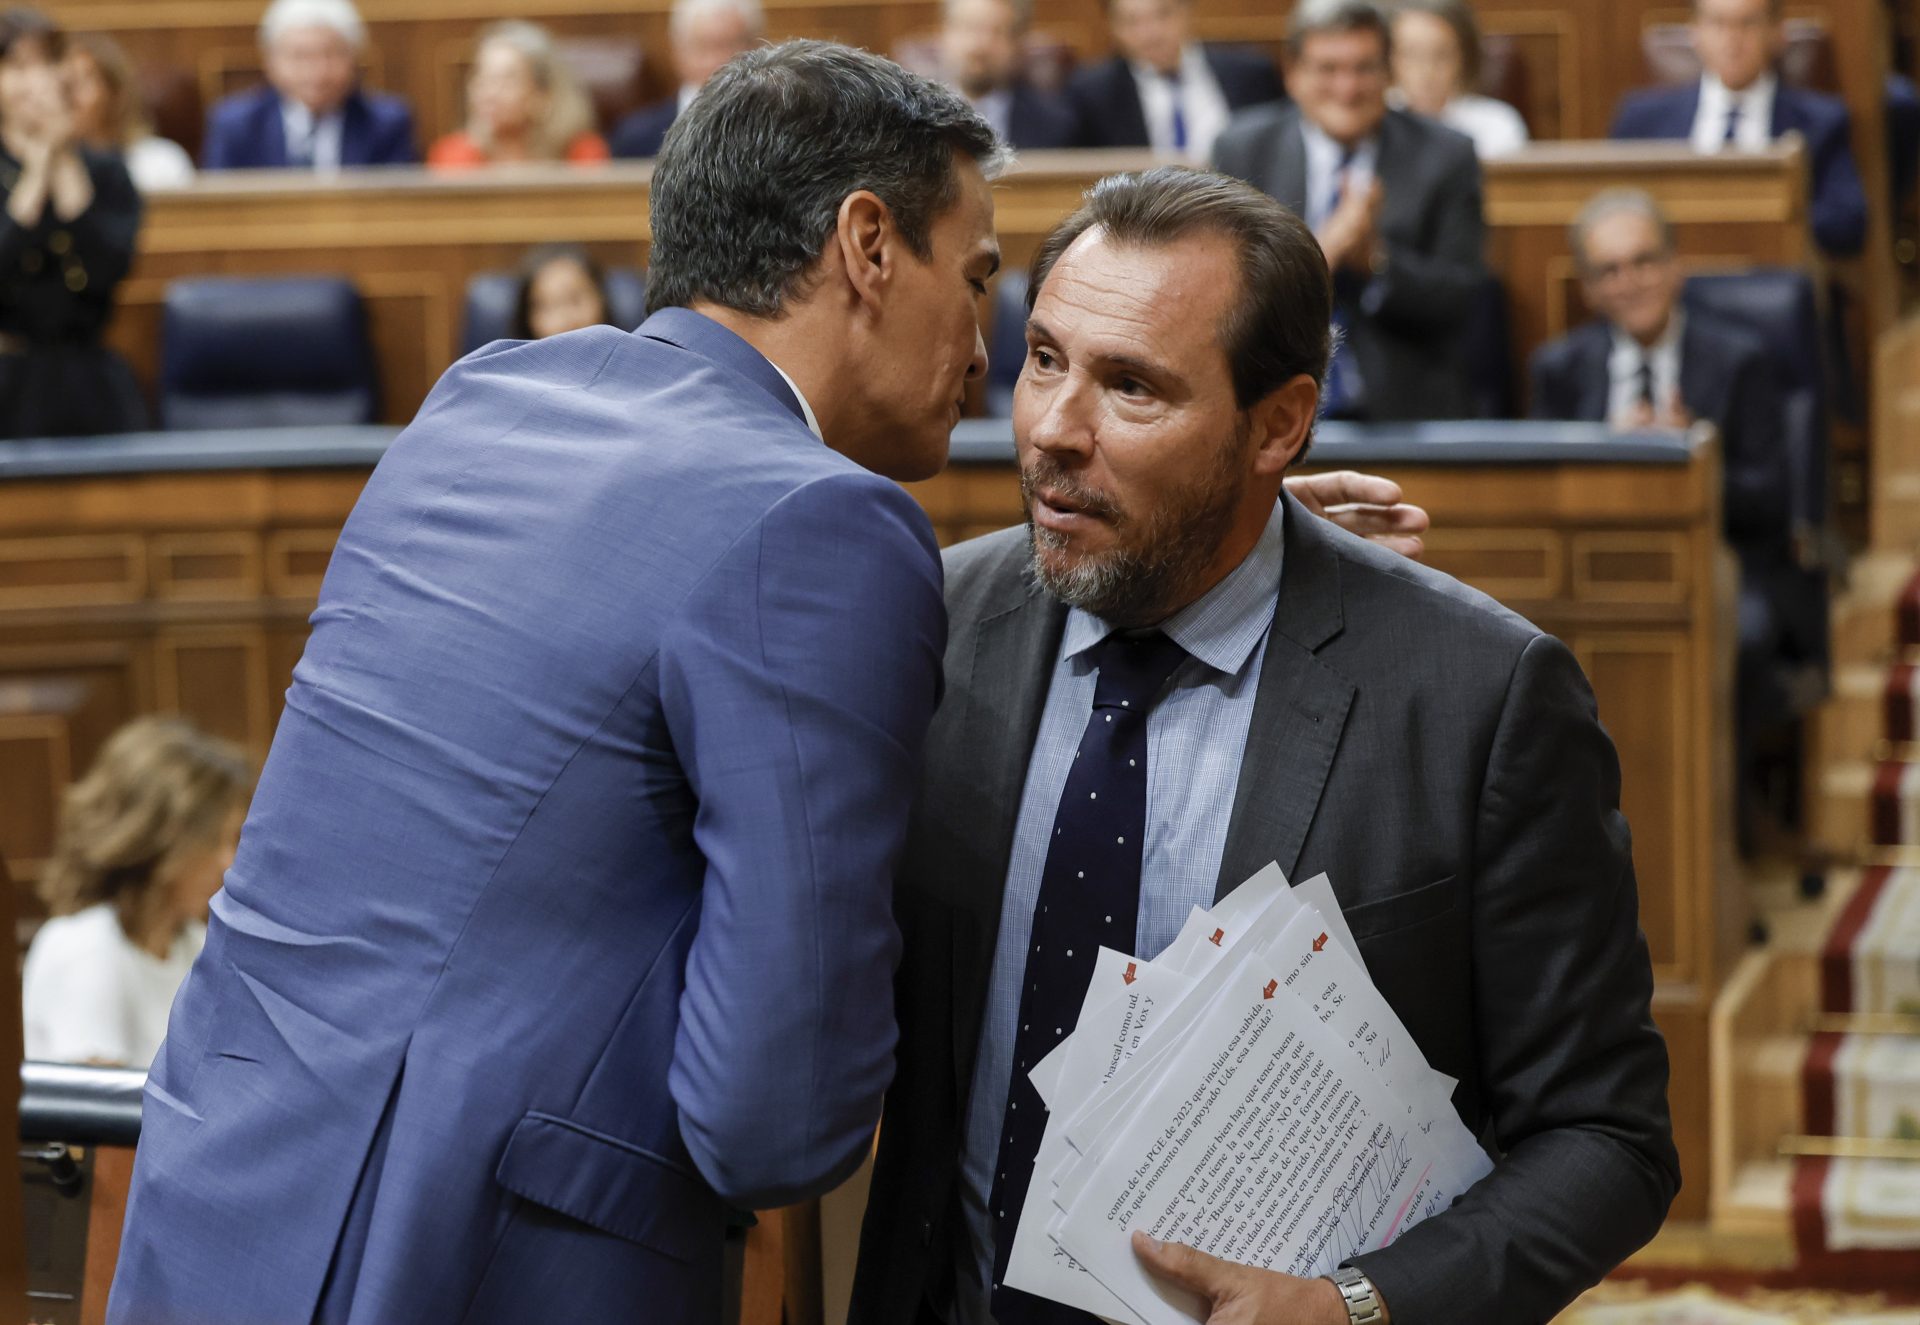 El PSOE recurre a Puente para mostrar las “contradicciones” de Feijóo, que le reprocha sus formas